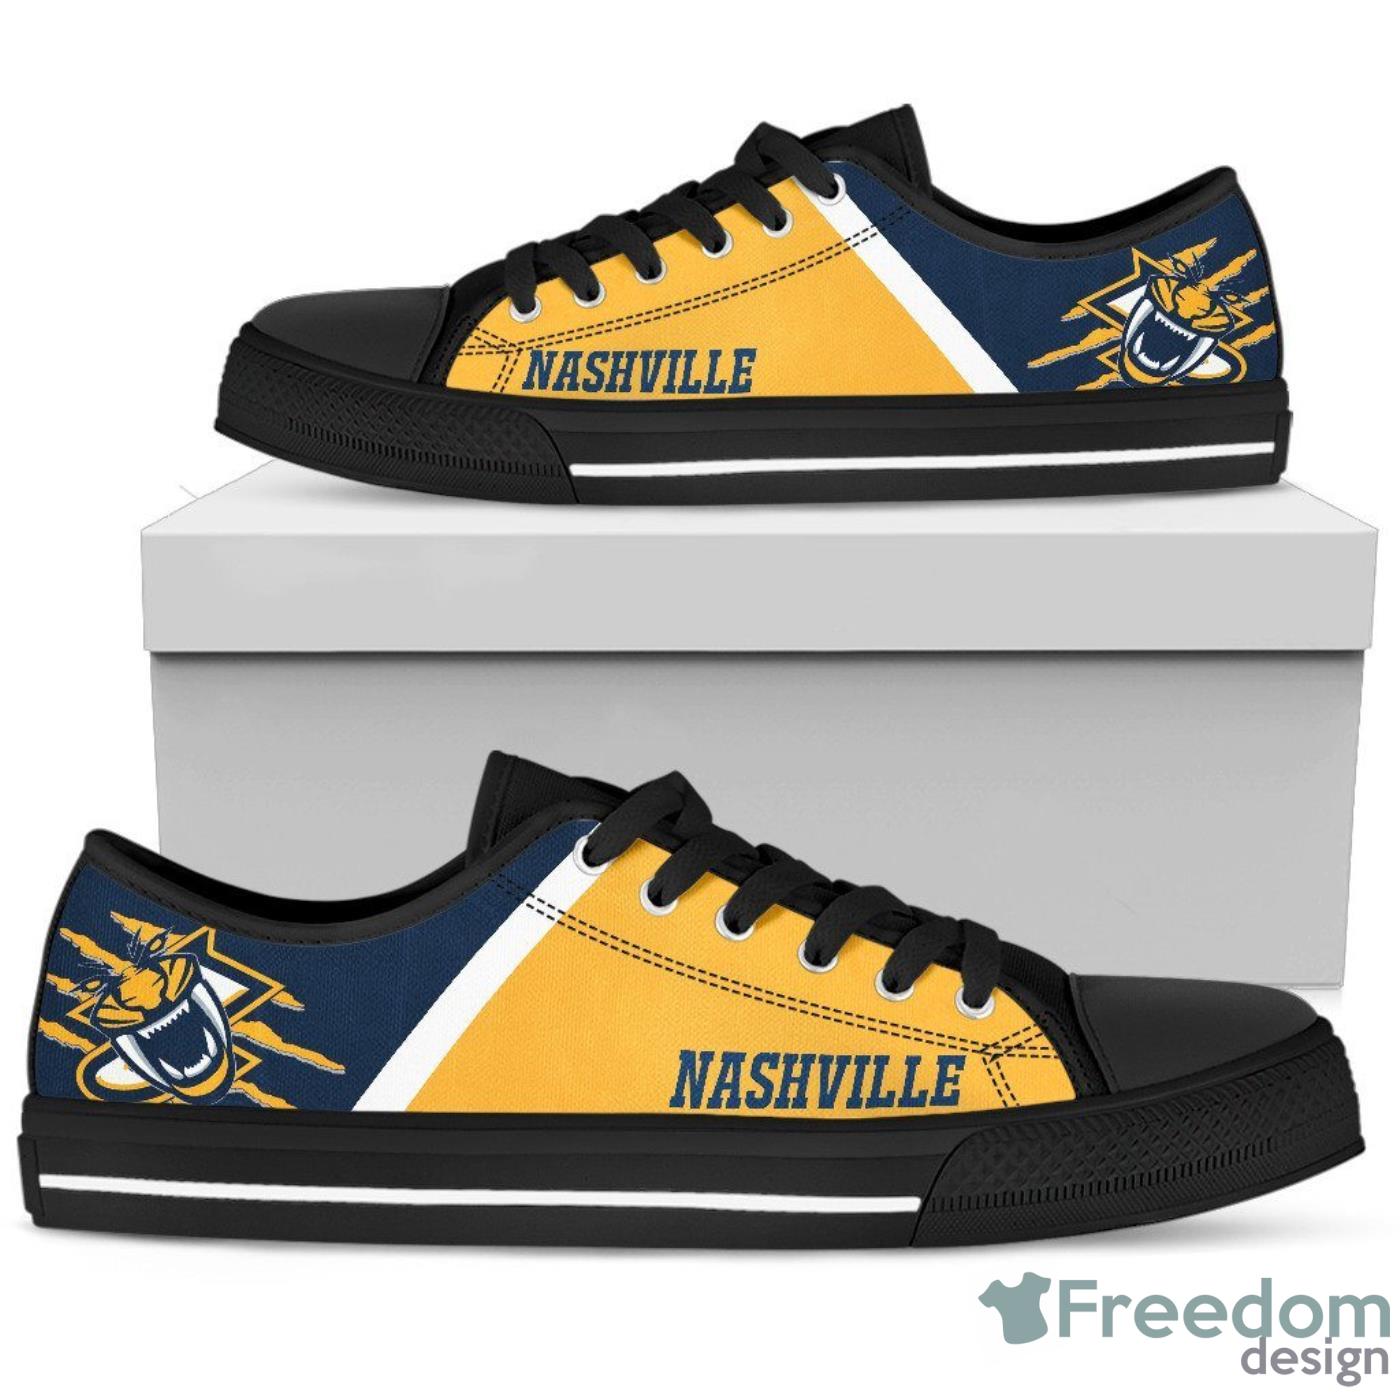 Nashville Predators Low Top Canvas Shoes For Men And Women Product Photo 1